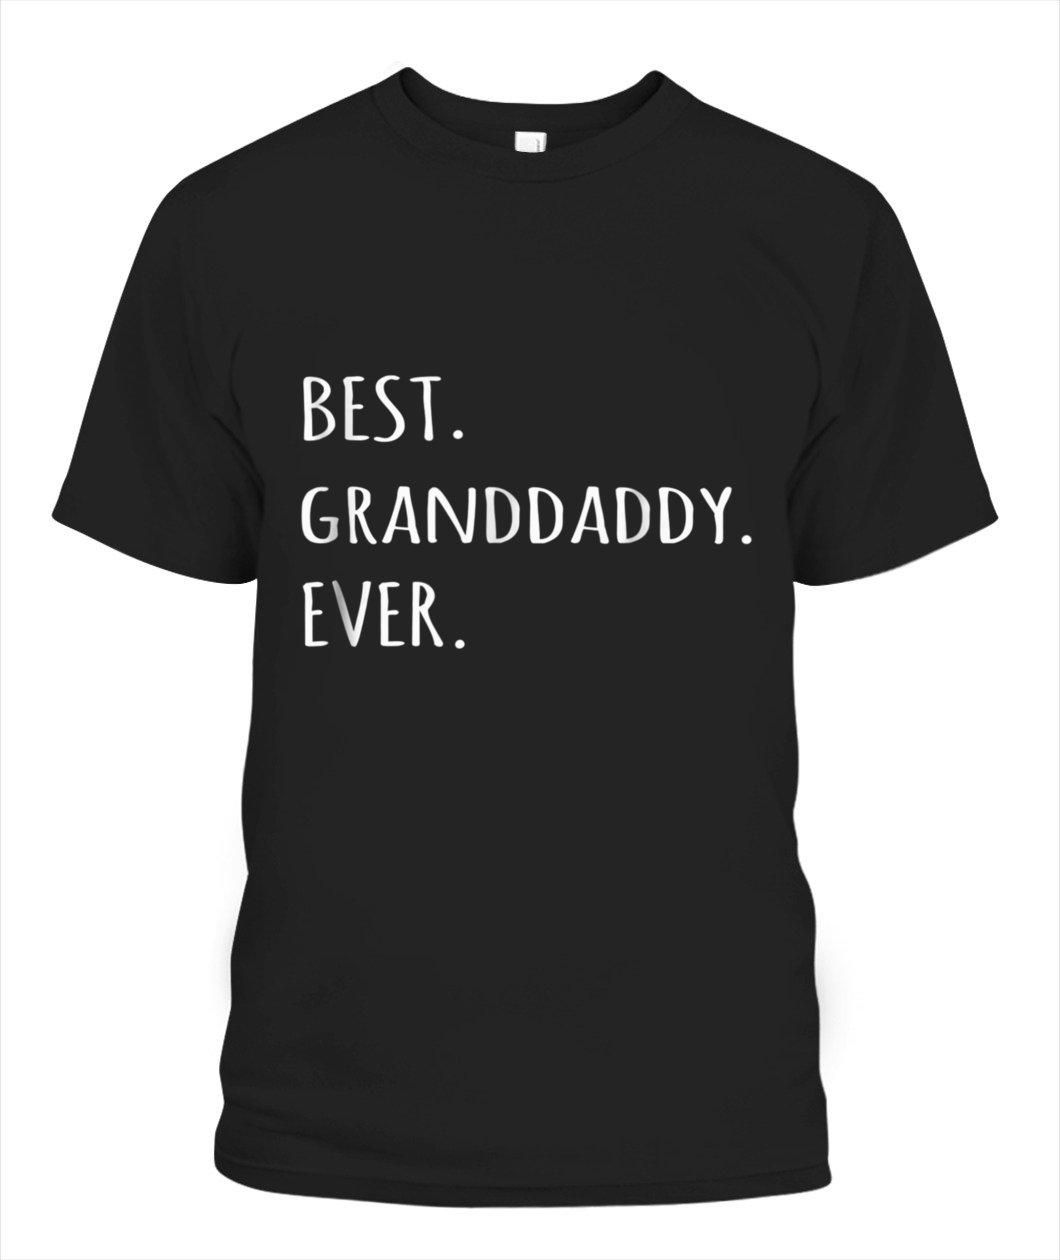 Best Granddaddy Ever Tee Shirt Grandpa Tee Shirt